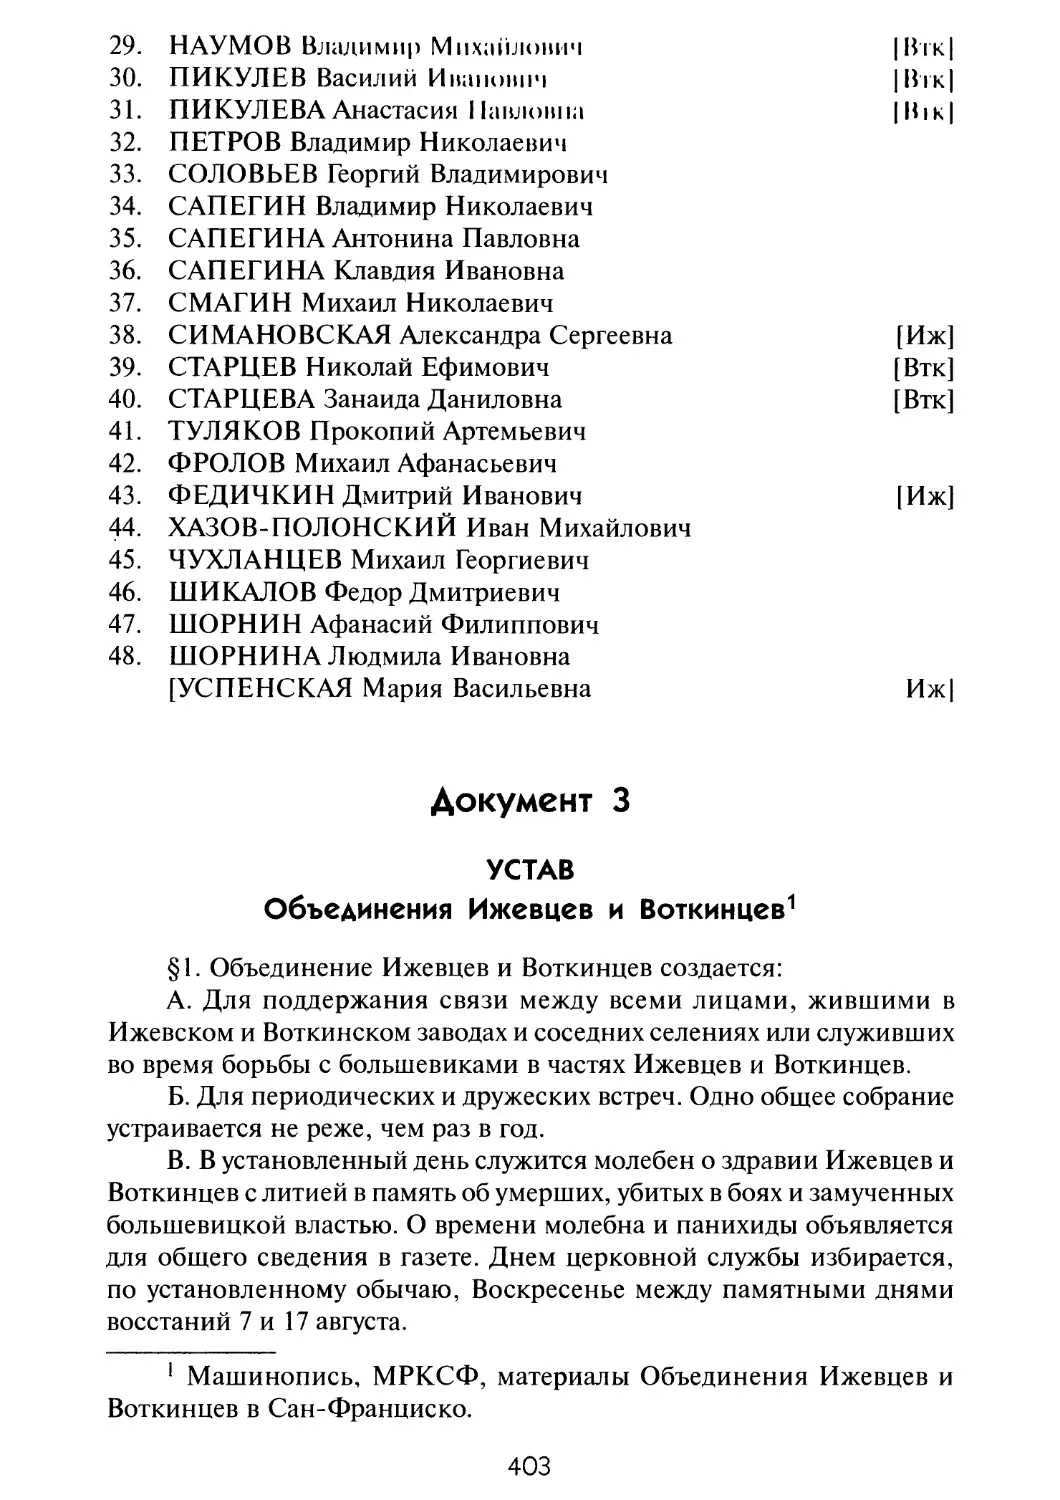 Документ 3. УСТАВ Объединения Ижевцев и Воткинцев